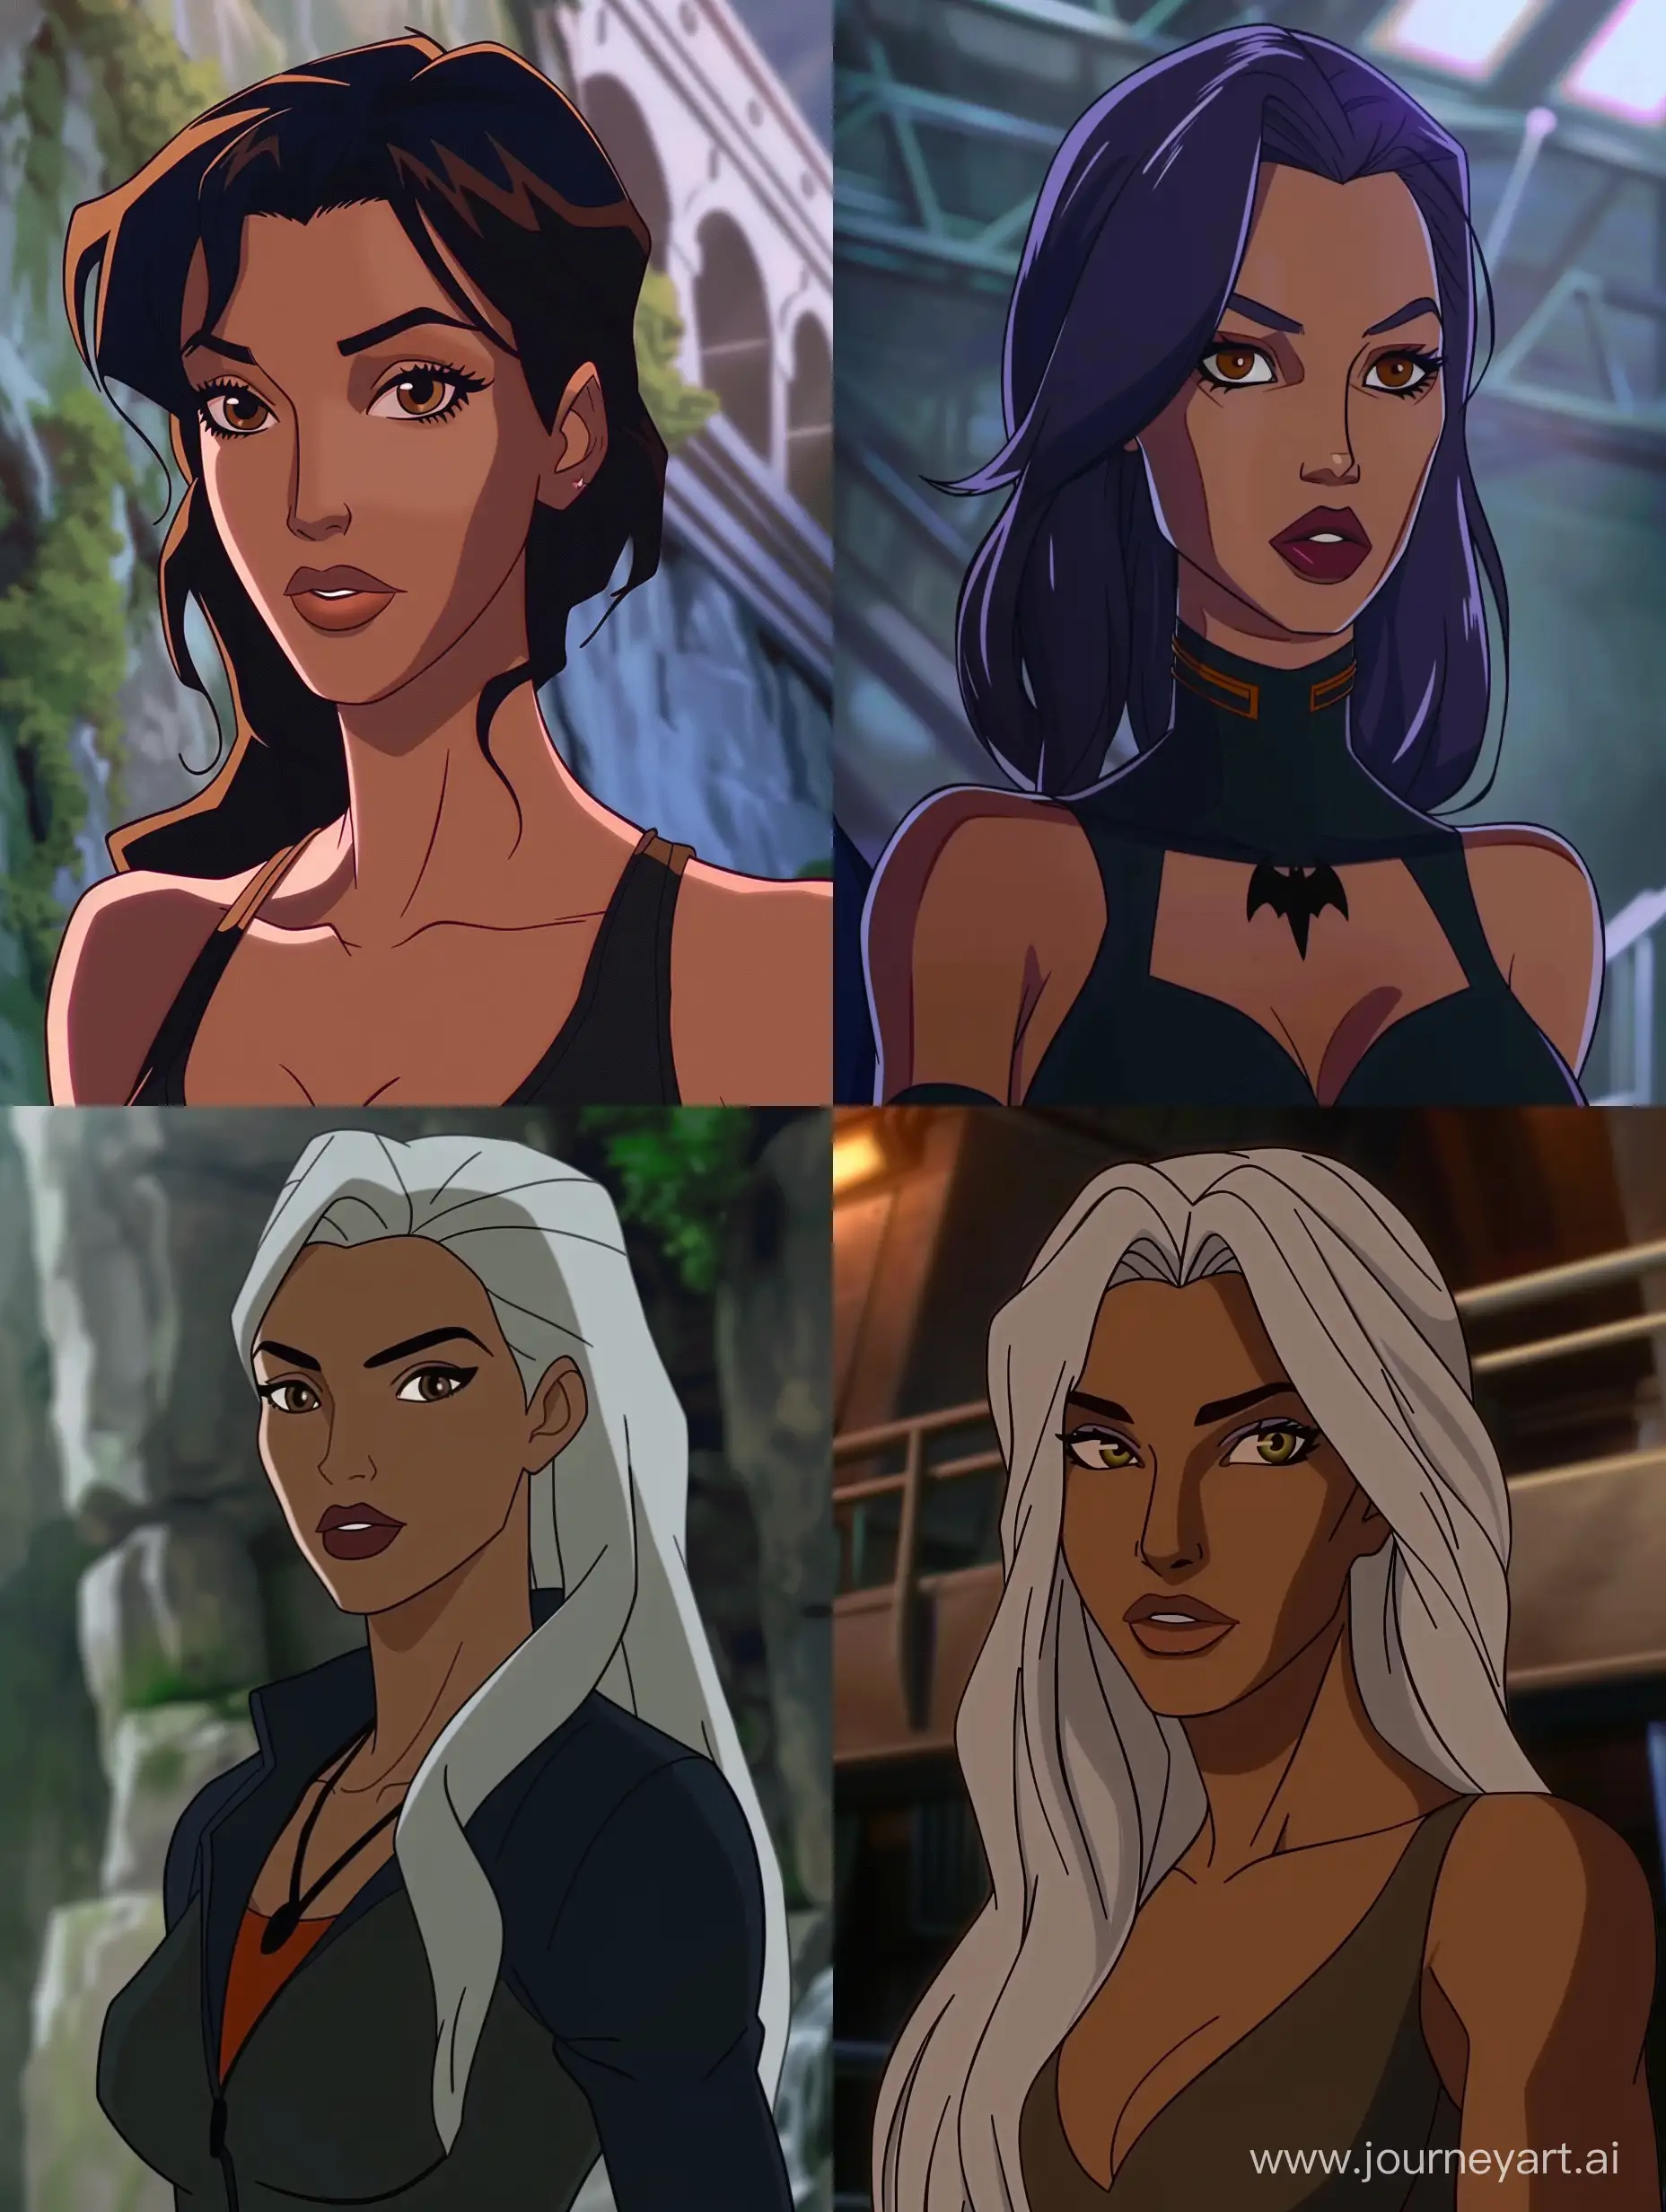 Kim-Kardashian-Teen-Titans-2003-Retro-Animation-Portrait